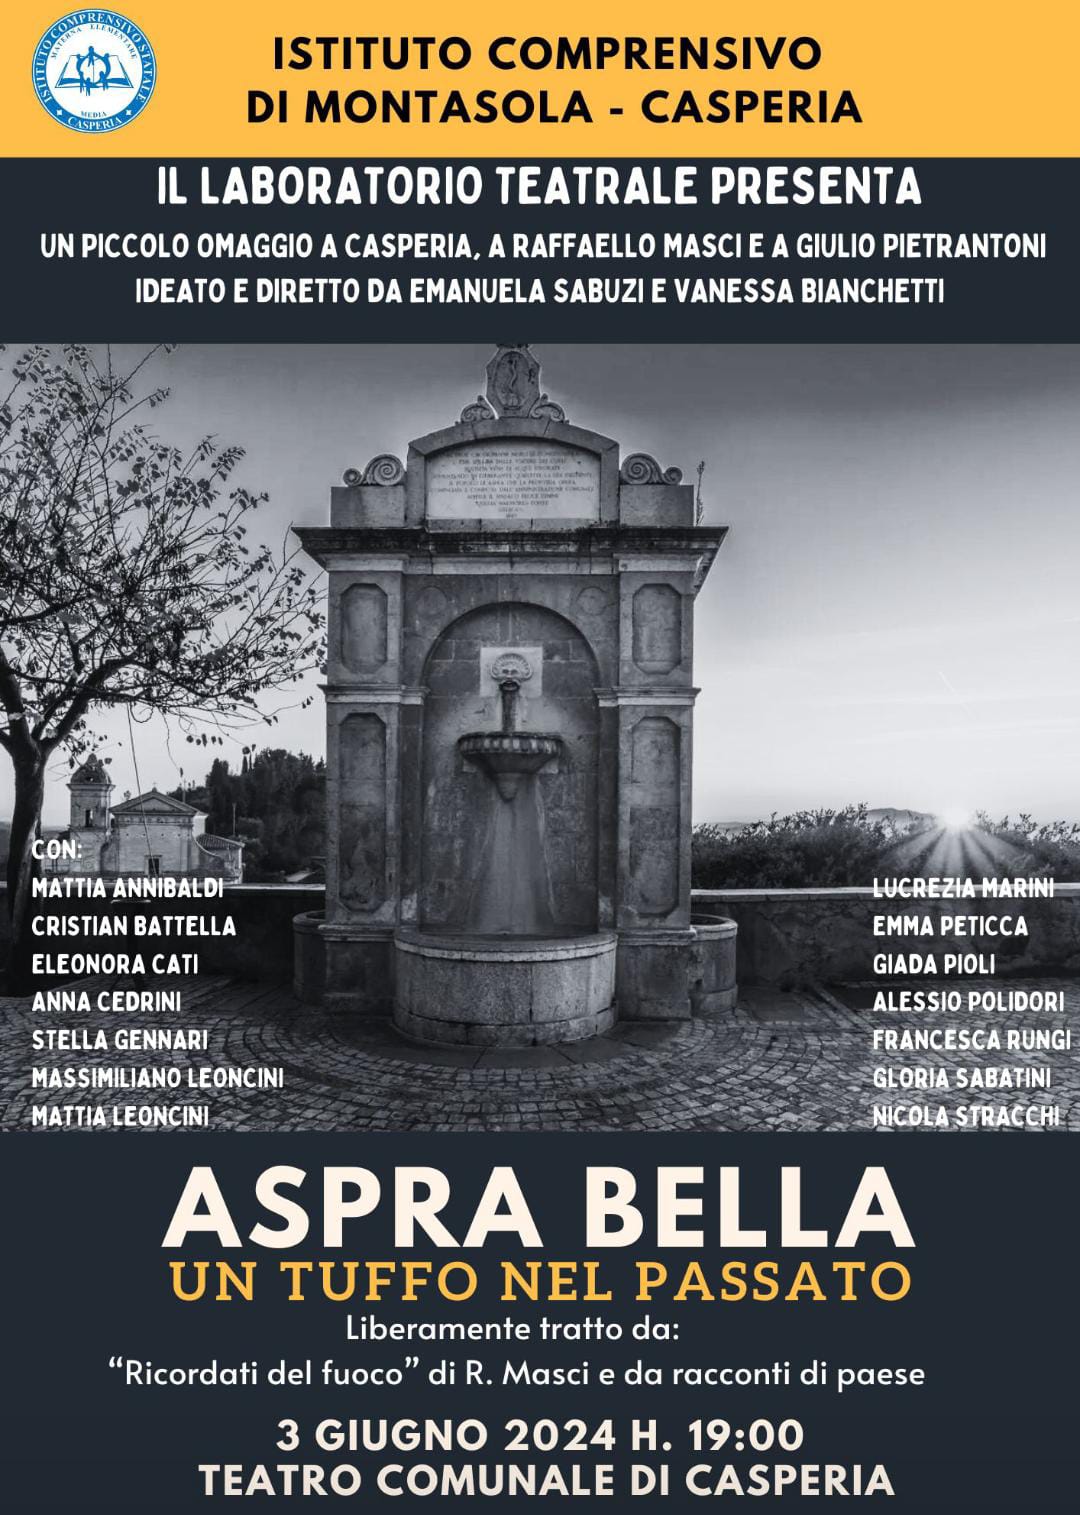 ASPRA BELLA – Un tuffo nel passato